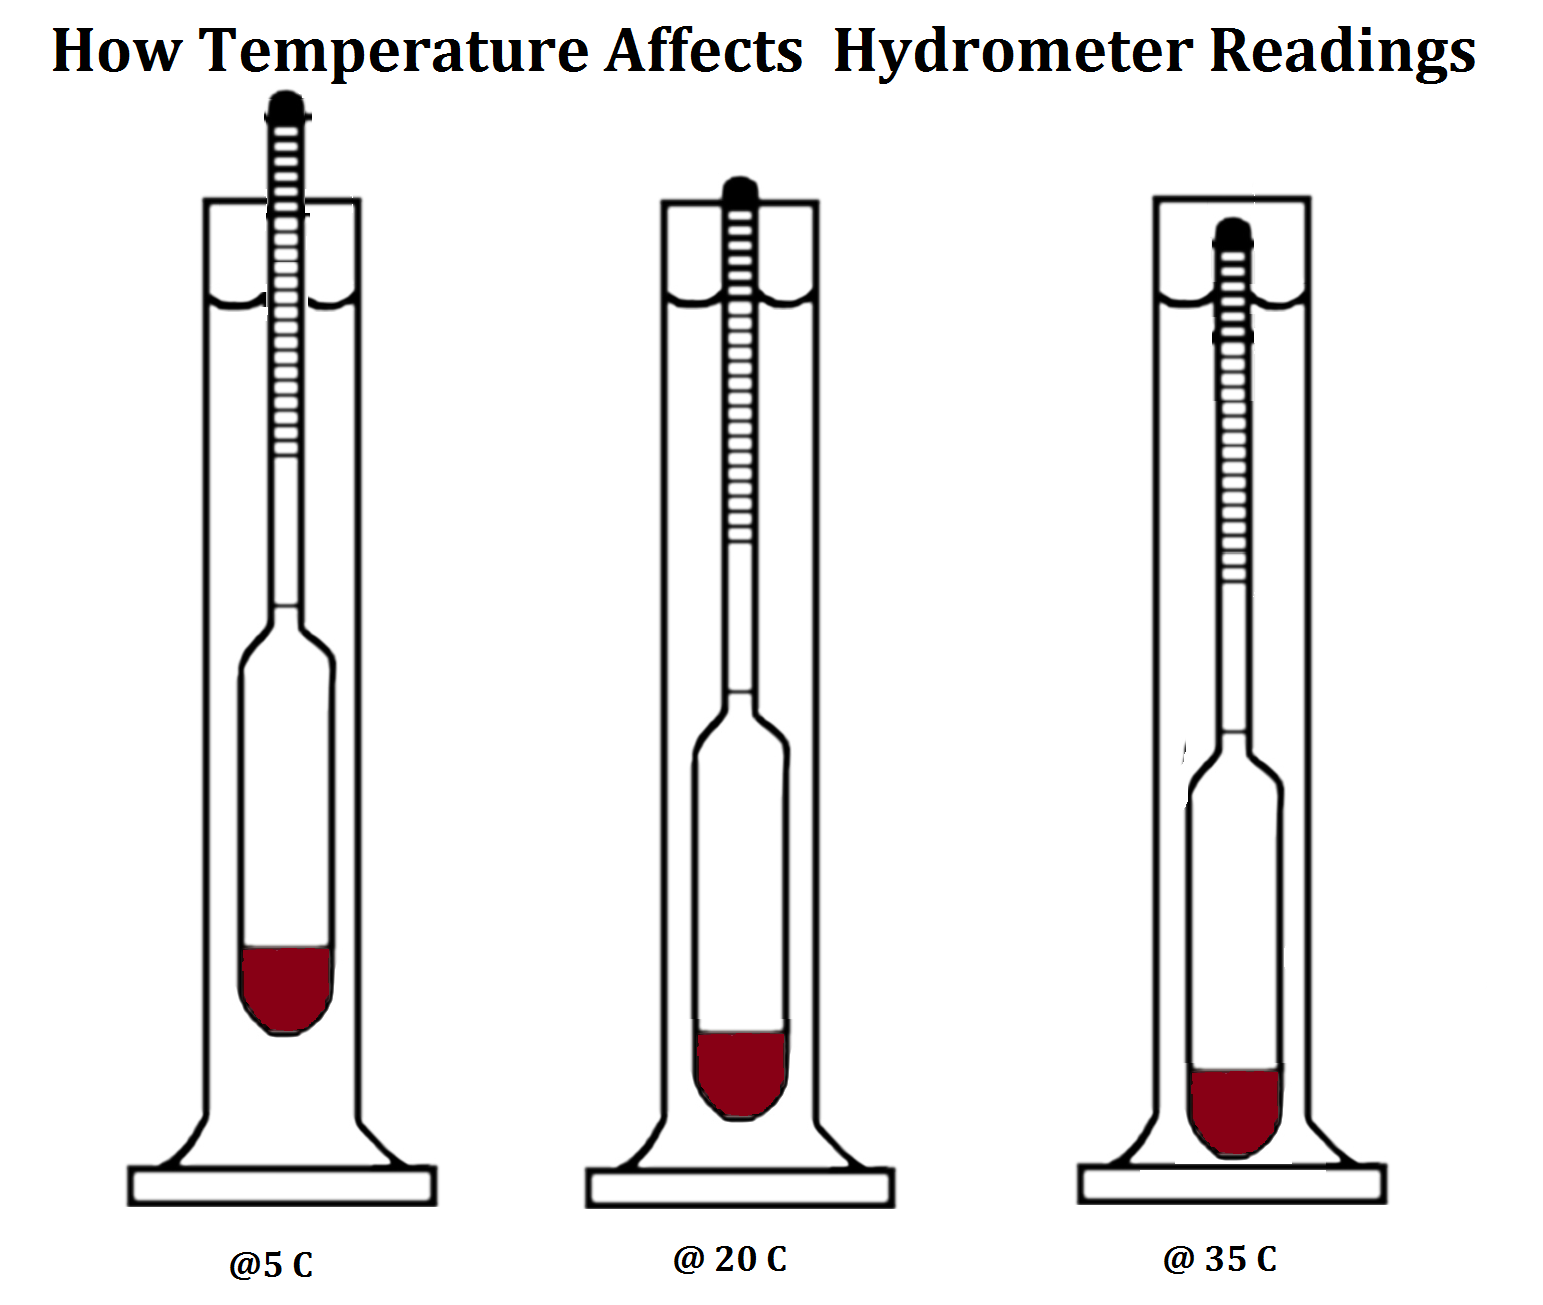 plato hydrometer temperature correction